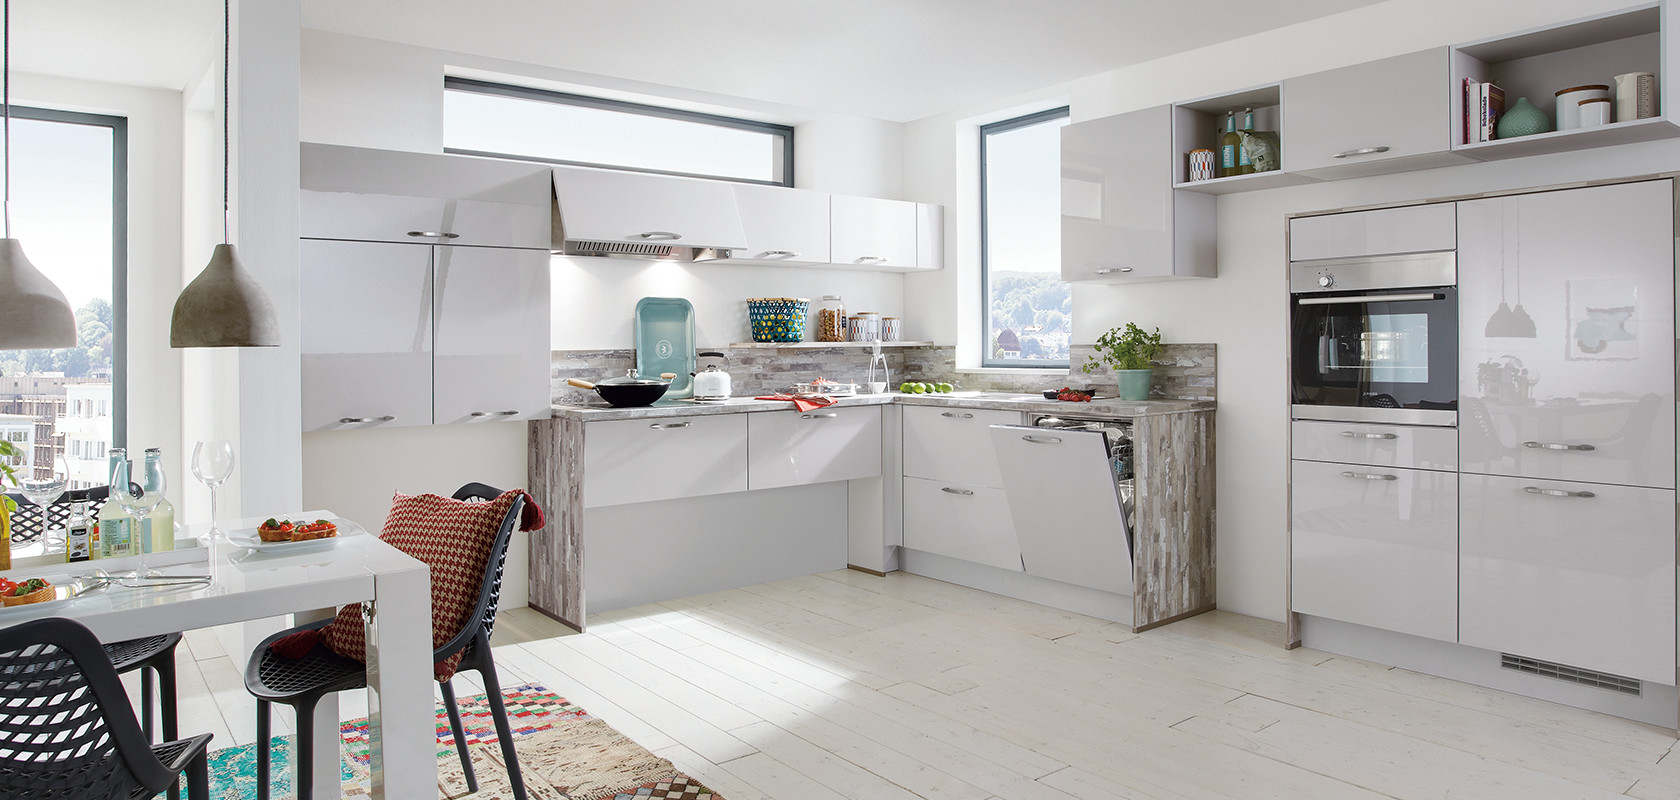 Světlá moderní kuchyně s bílými skříňkami, nerezovými spotřebiči a výraznými barvami z dekoračních předmětů a vícebarevného koberce.